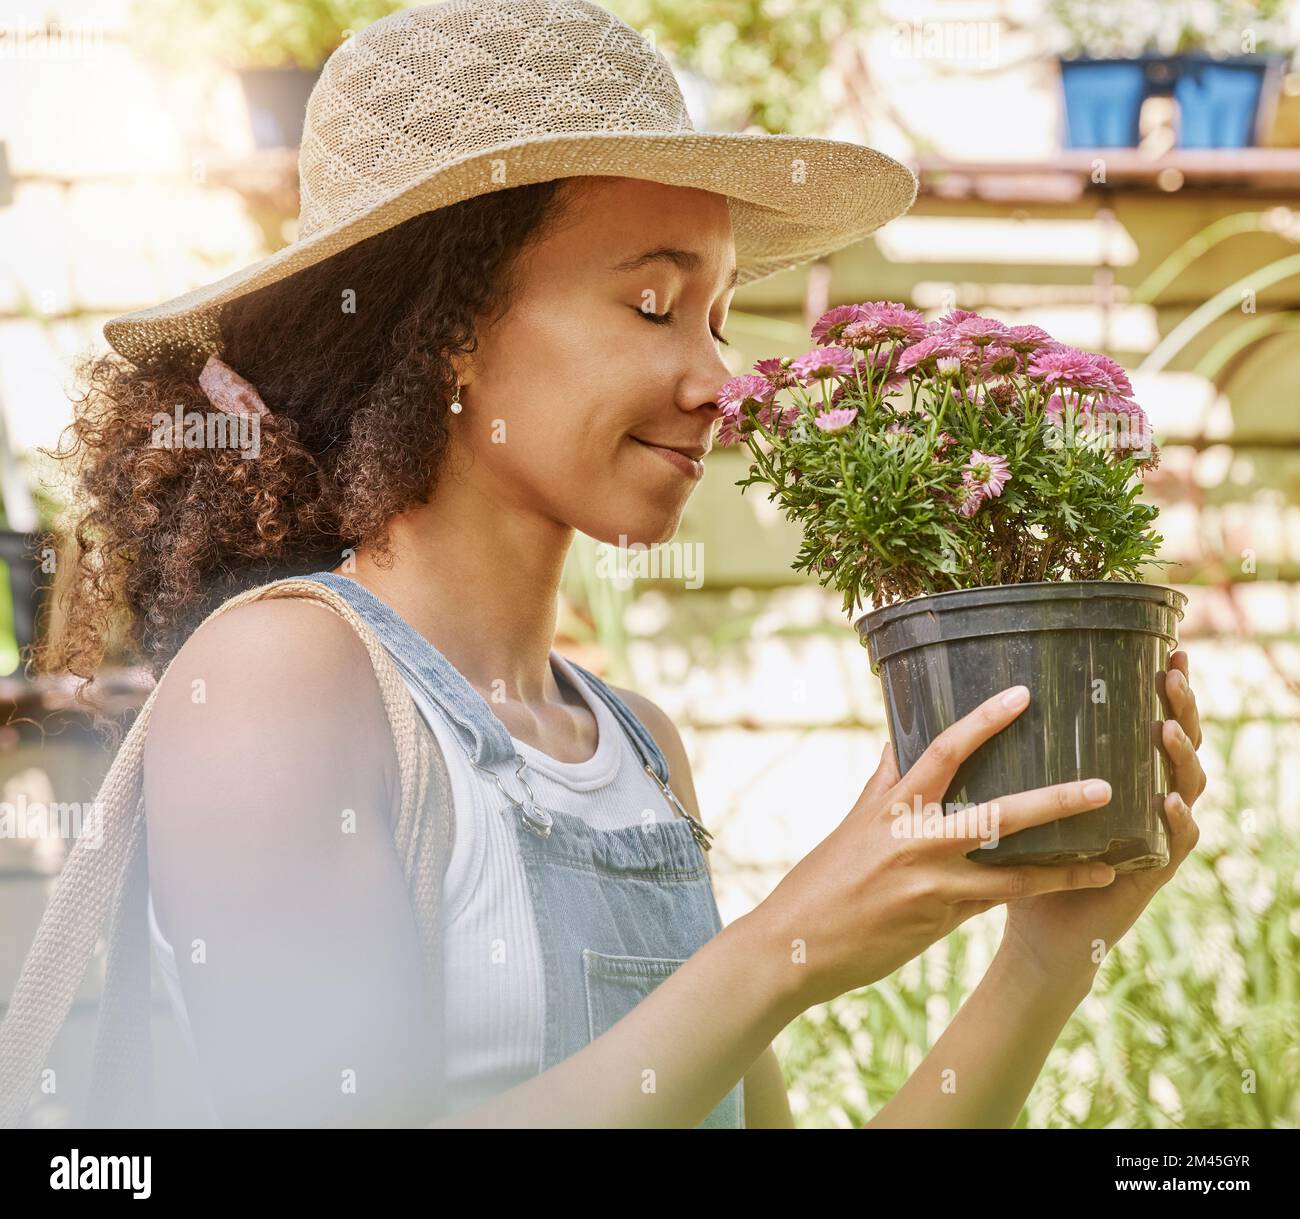 Jardinage - Femme Mûr Plantant Des Fleurs Image stock - Image du